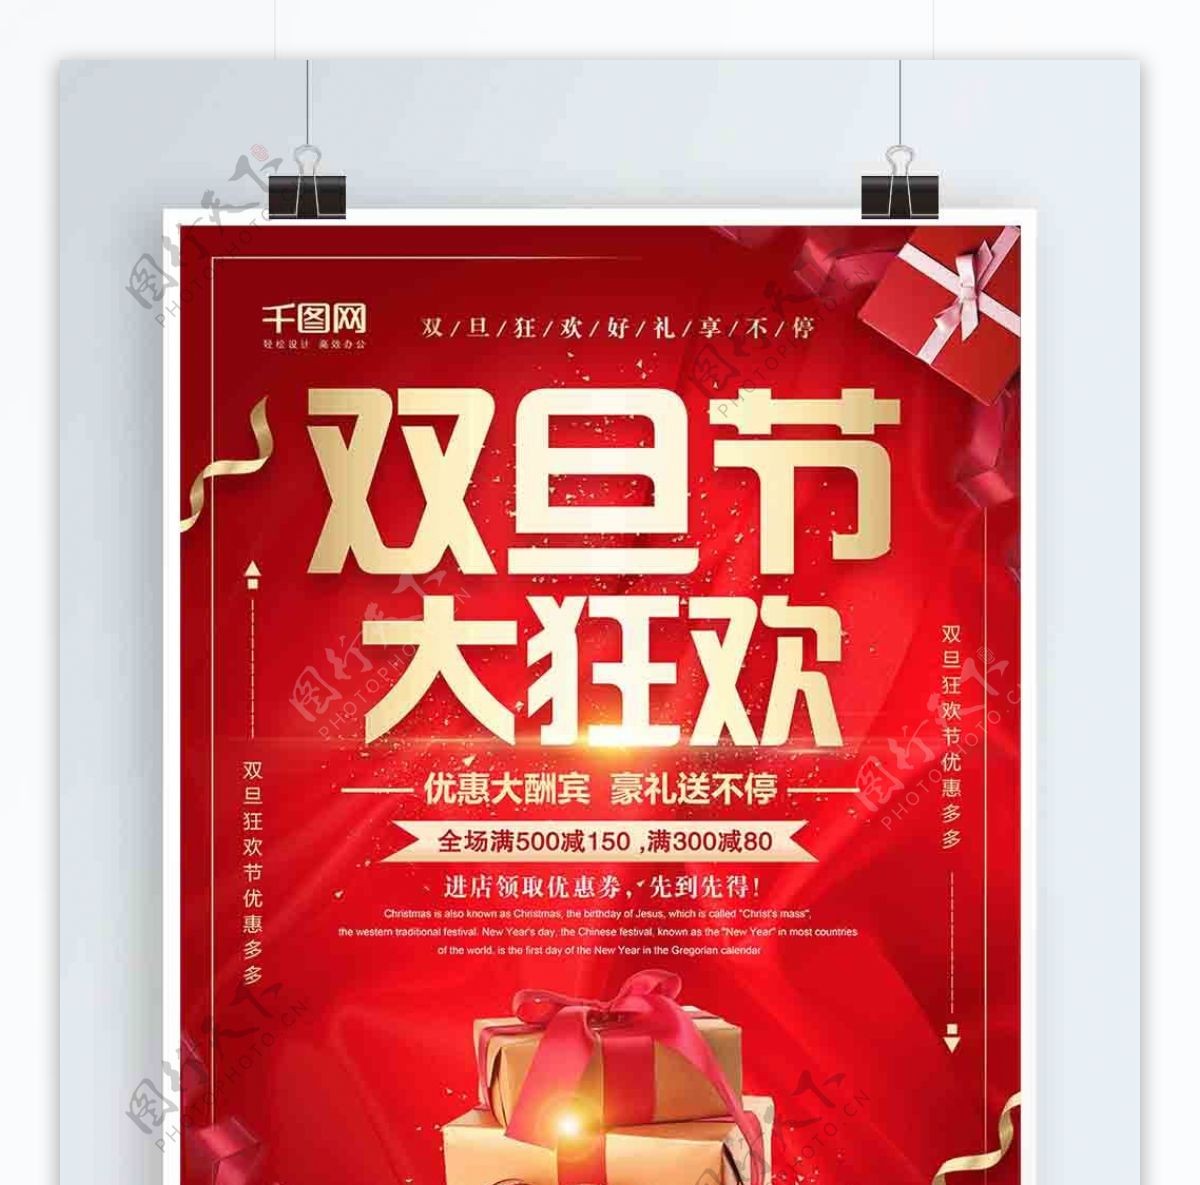 红色大气双旦节狂欢促销海报设计